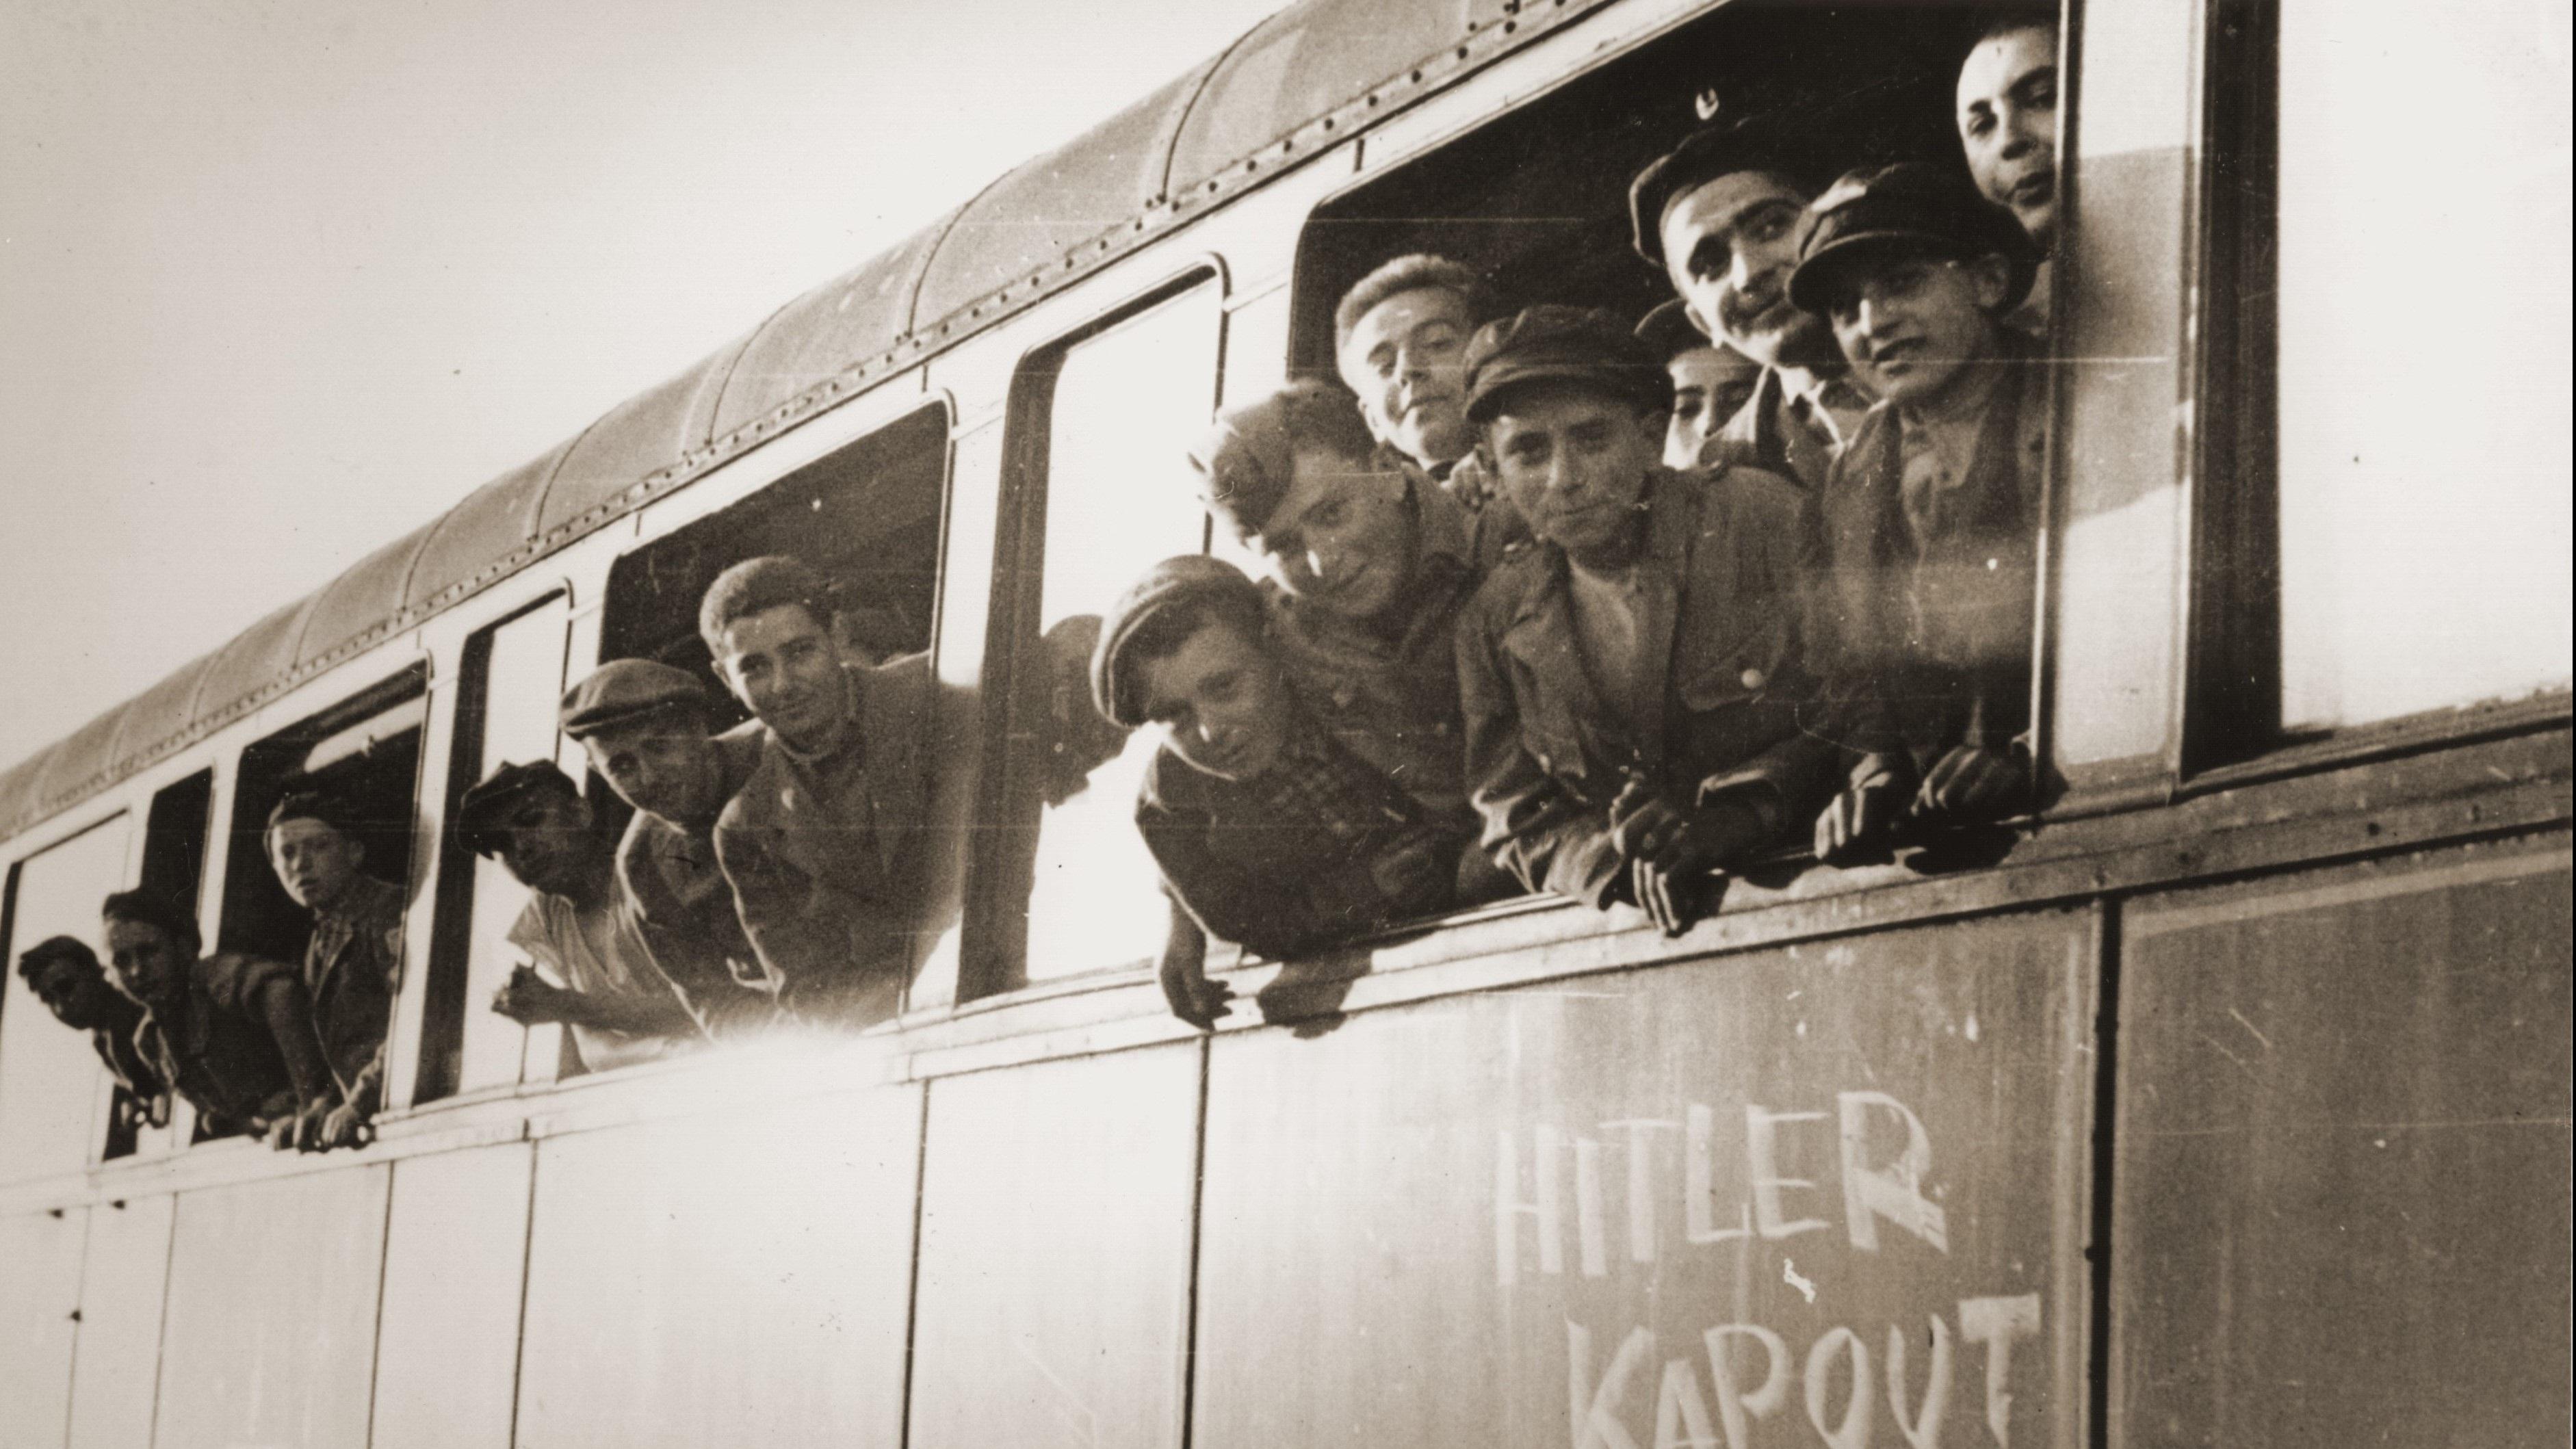 בתמונה: ילדי בוכנוואלד בדרך לבית ההבראה באונאי, צרפת, שנשכר על ידי אוז"ה, ארגון צדקה יהודי צרפתי